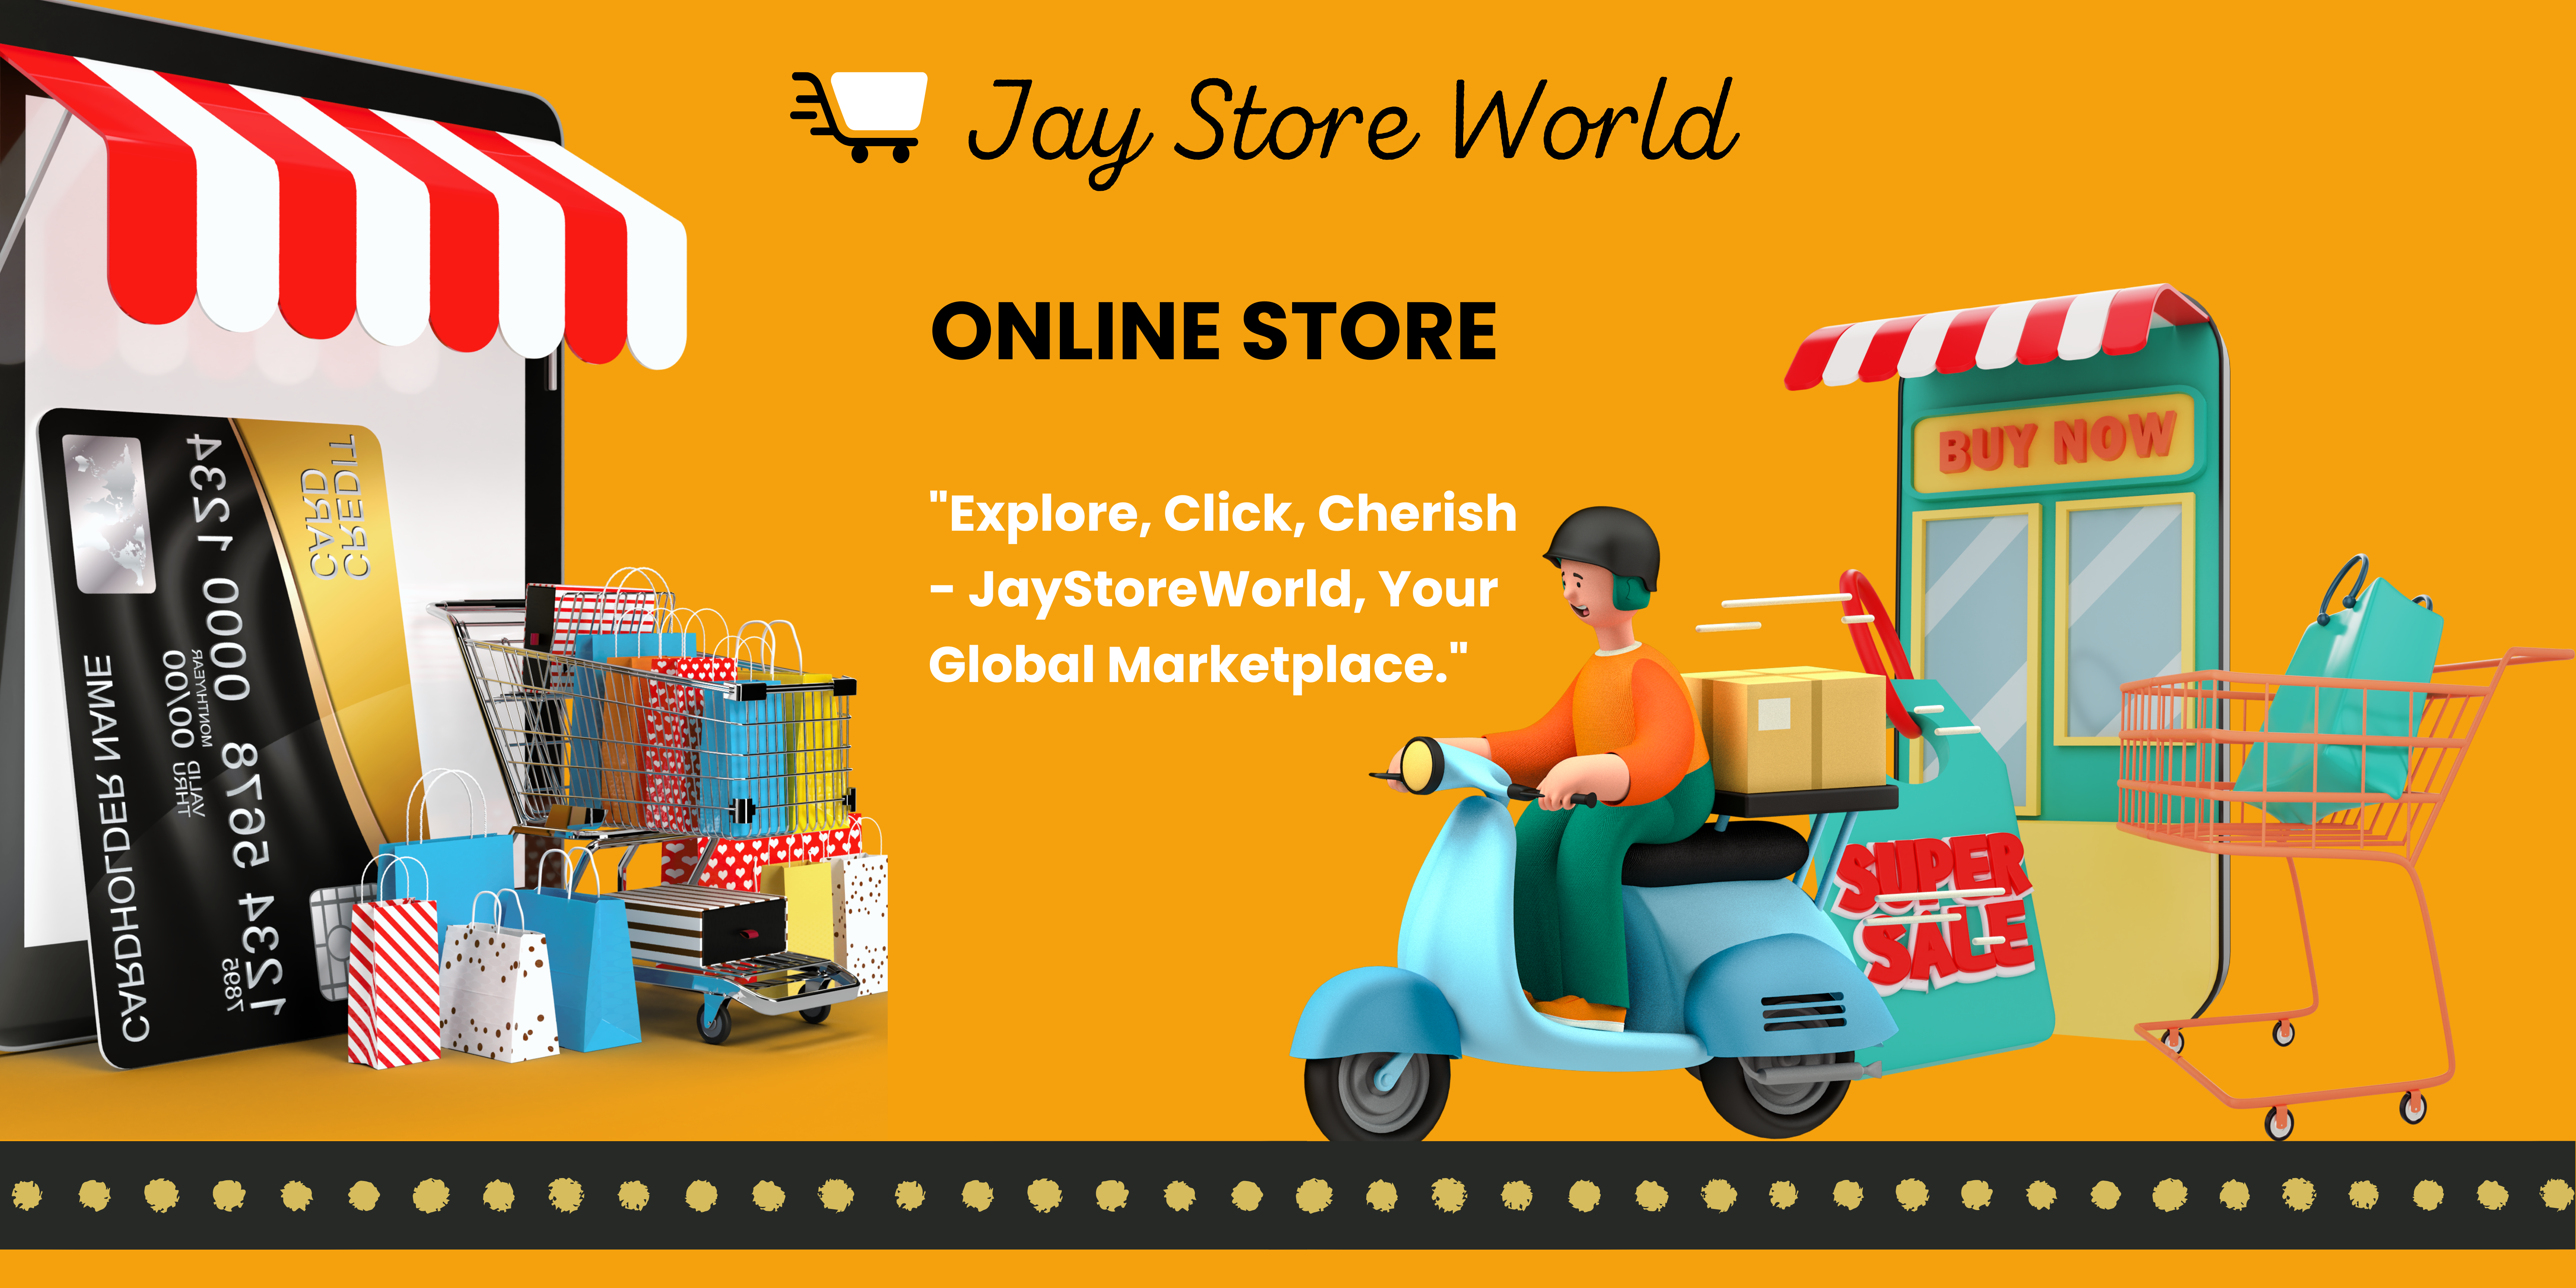 Jay Store World